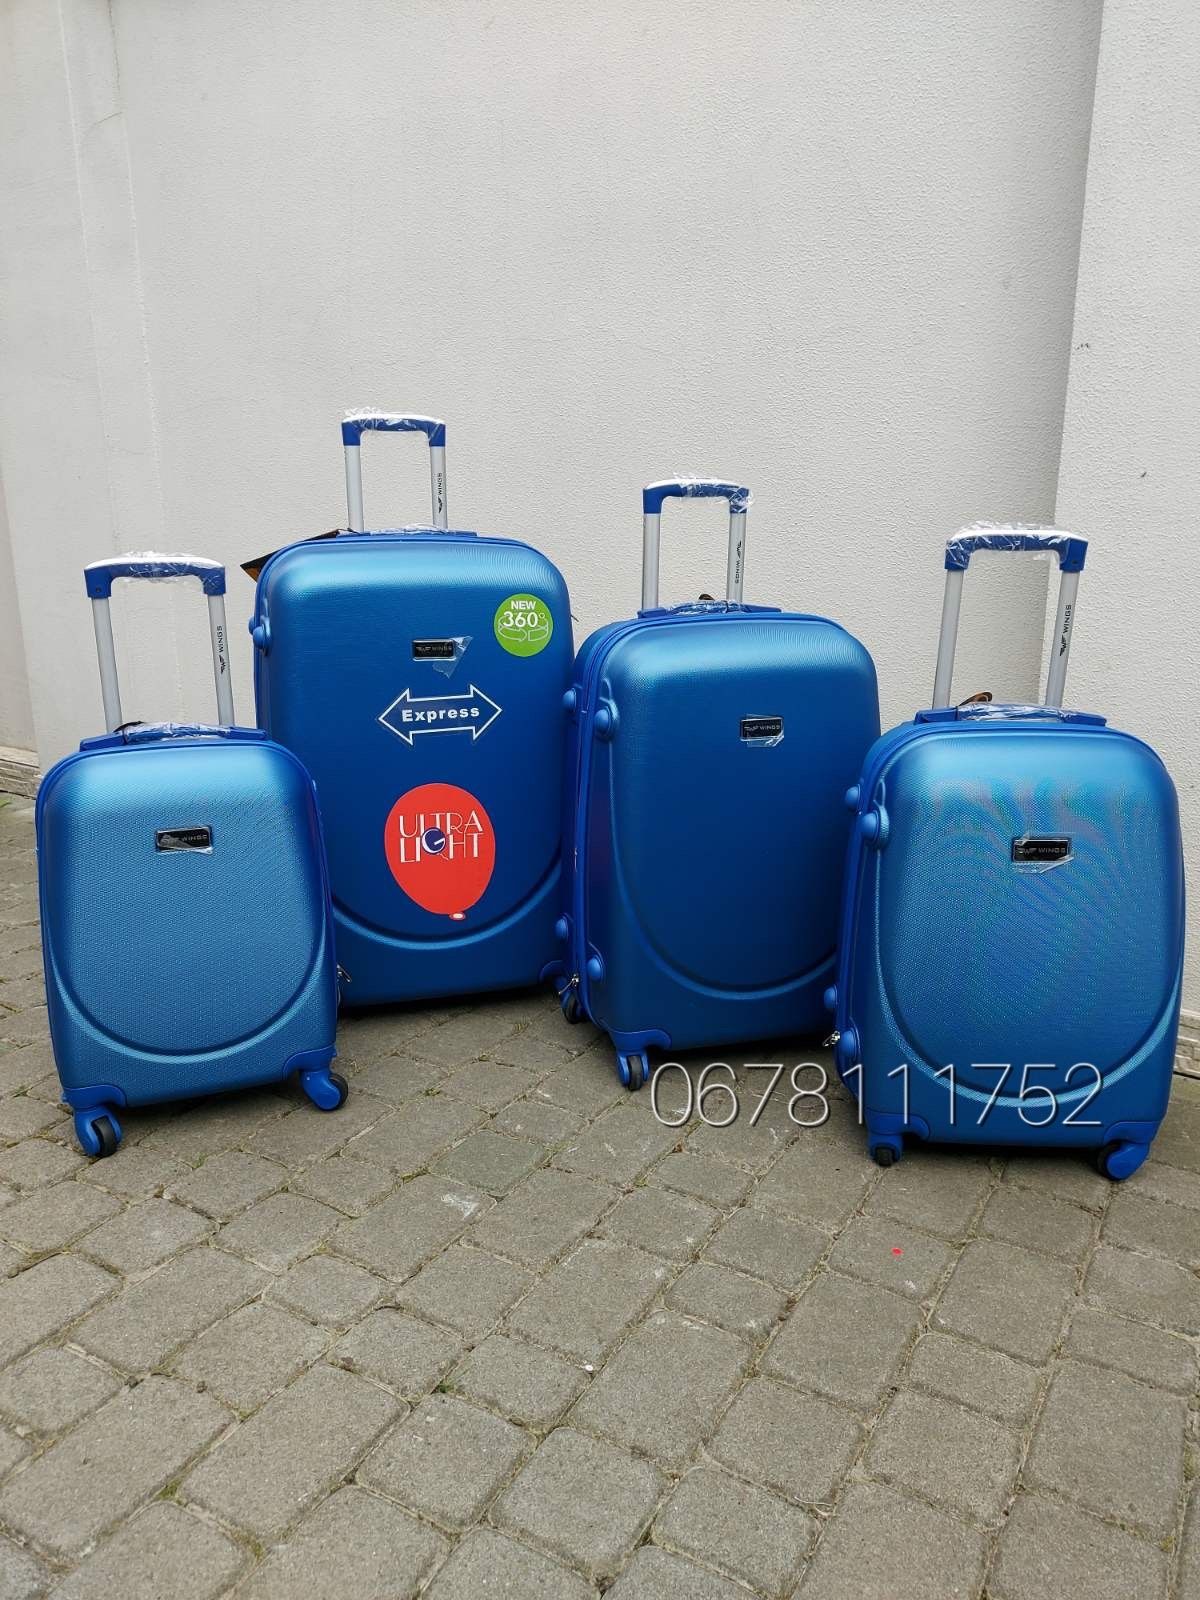 XS/S/M/L WINGS 310 Польща валізи чемоданы сумки на колесах поклажа